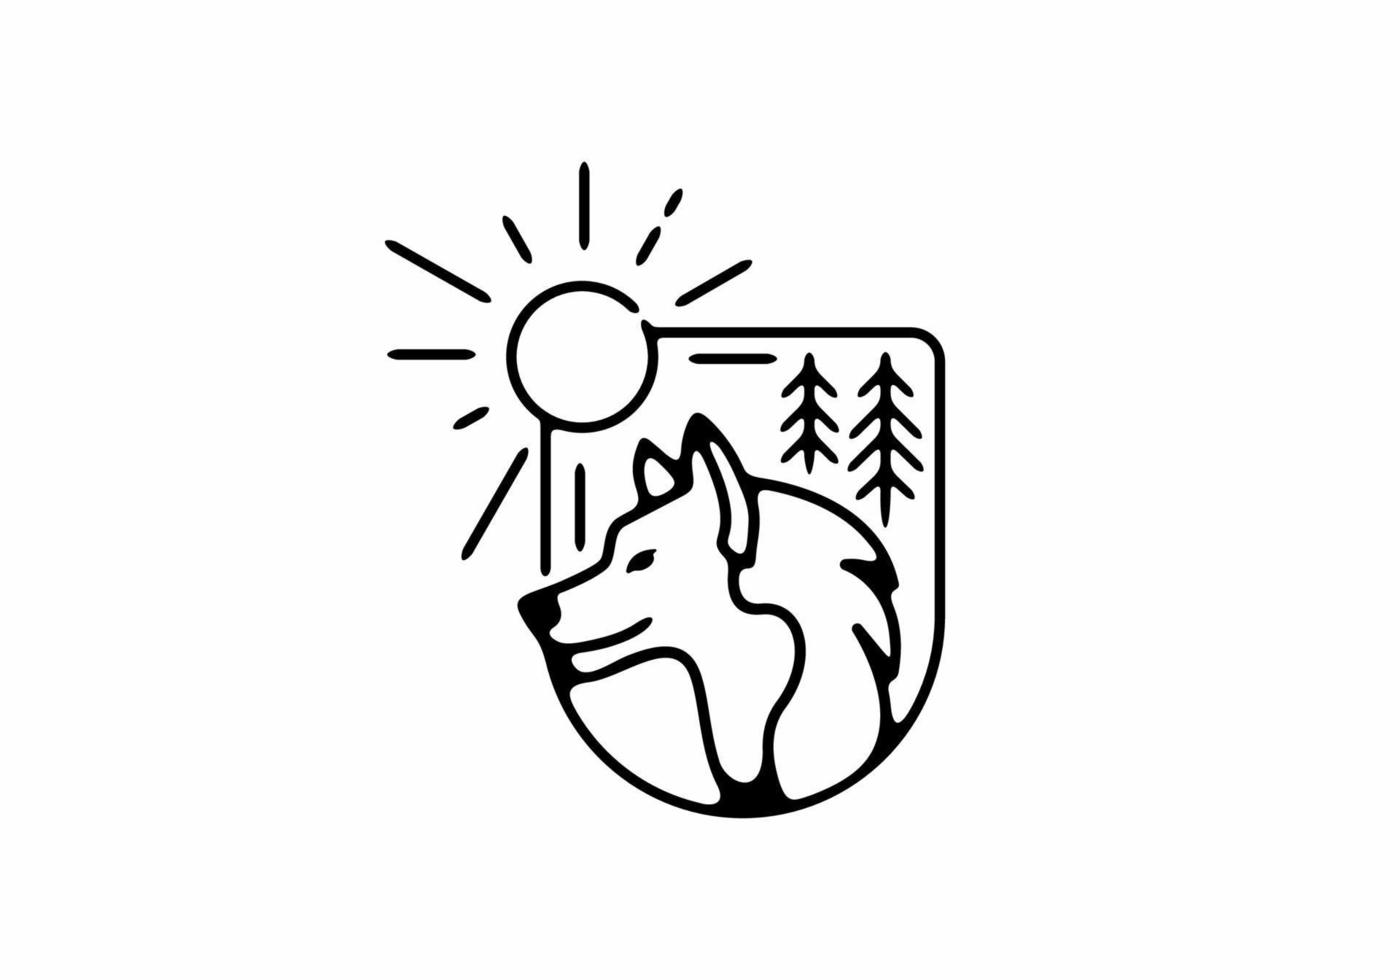 zwarte lijn kunst illustratie van wilde wolf in half ovale vorm vector